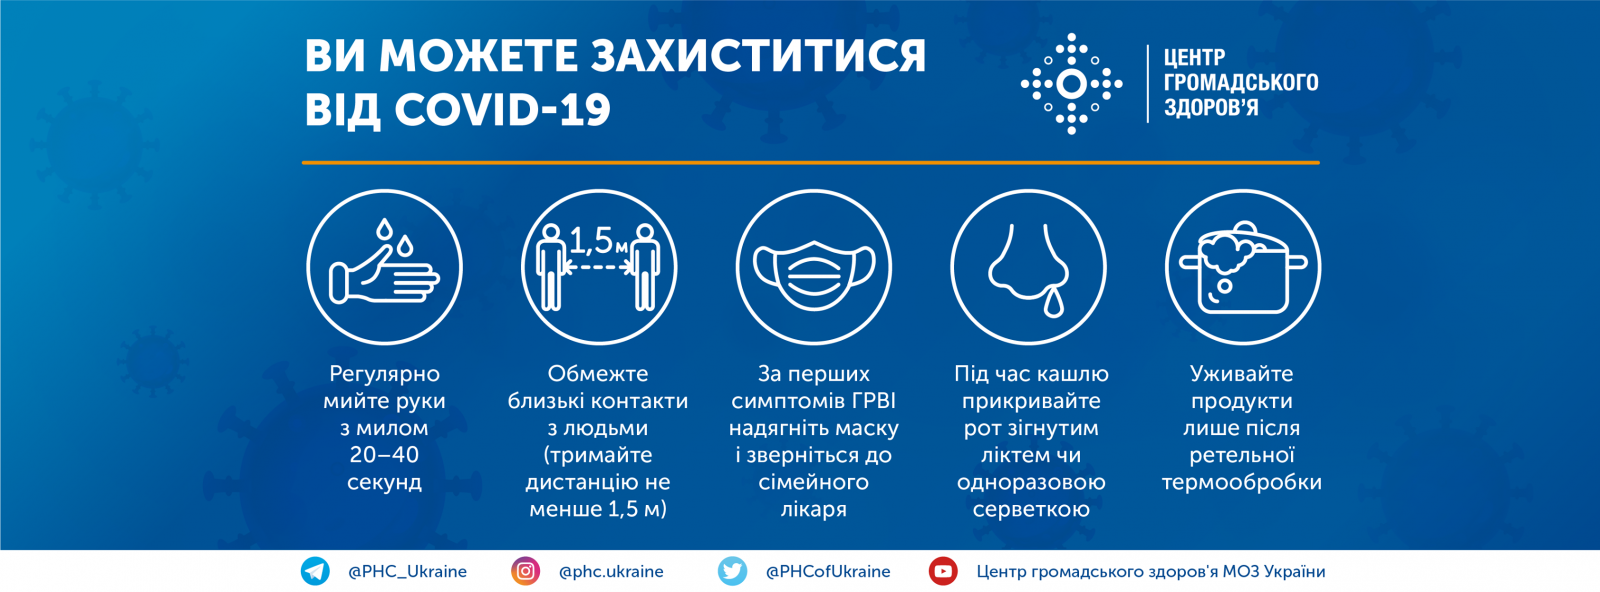 Графіка Центру громадського здоров'я України